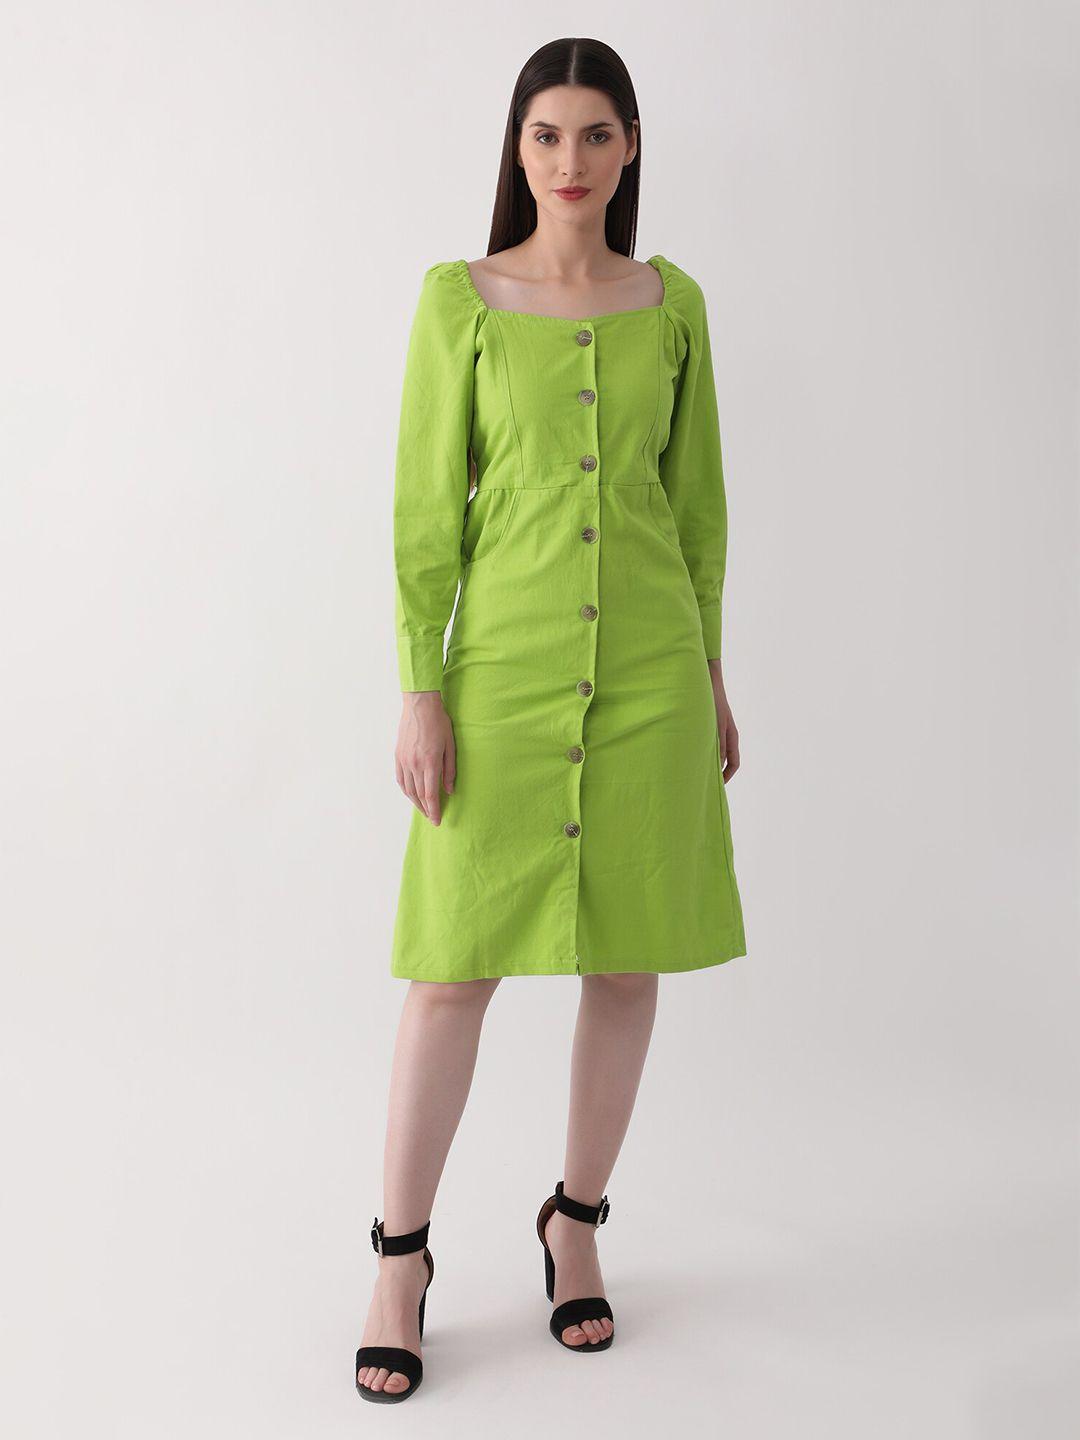 dkgf fashion green a-line dress